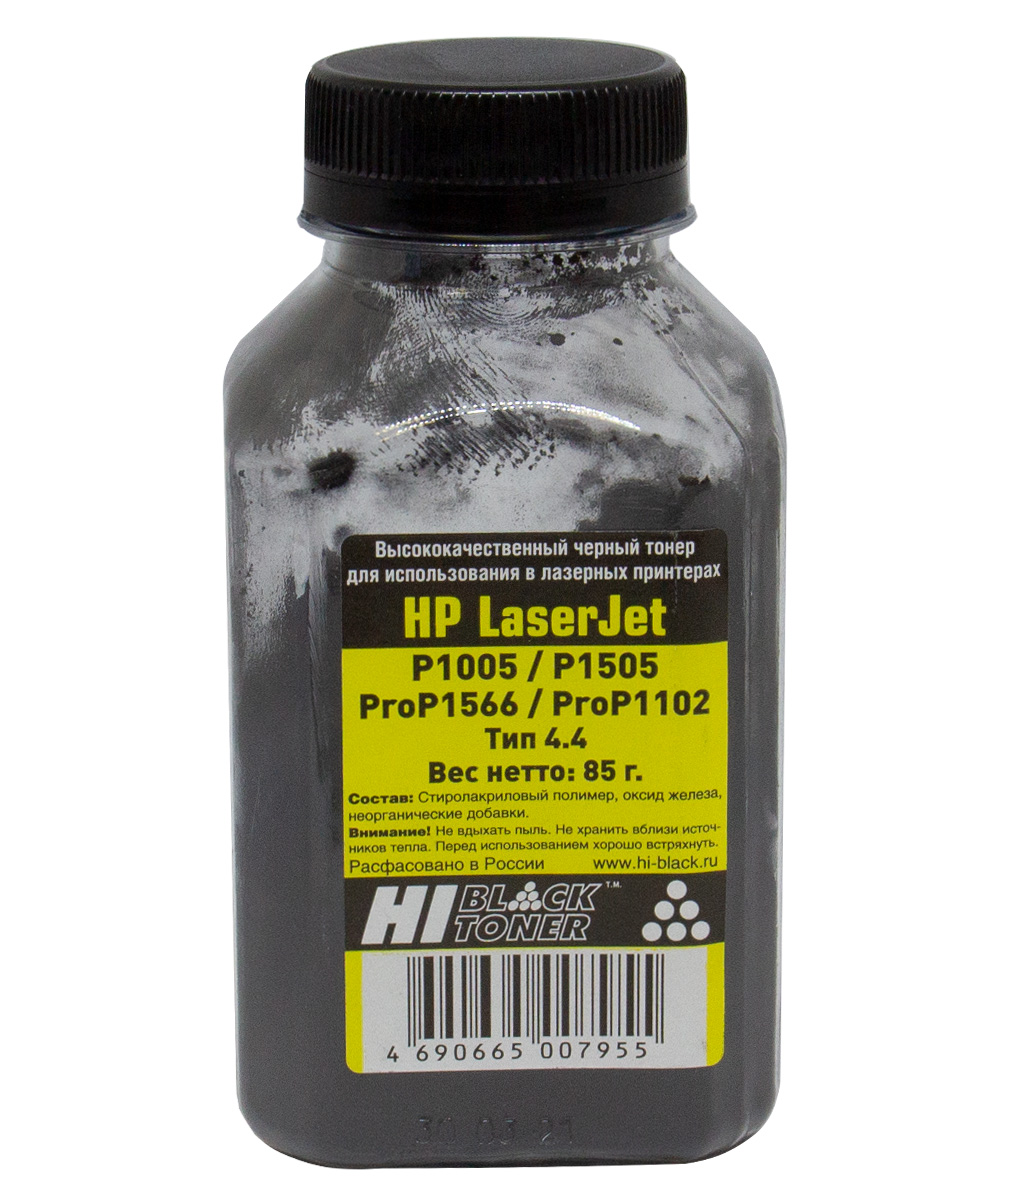 Тонер Hi-Black (CB435A) для HP LJ P1005/ P1505/ Pro P1566/ Pro P1102, Тип 4.4, чёрный (85 гр.)